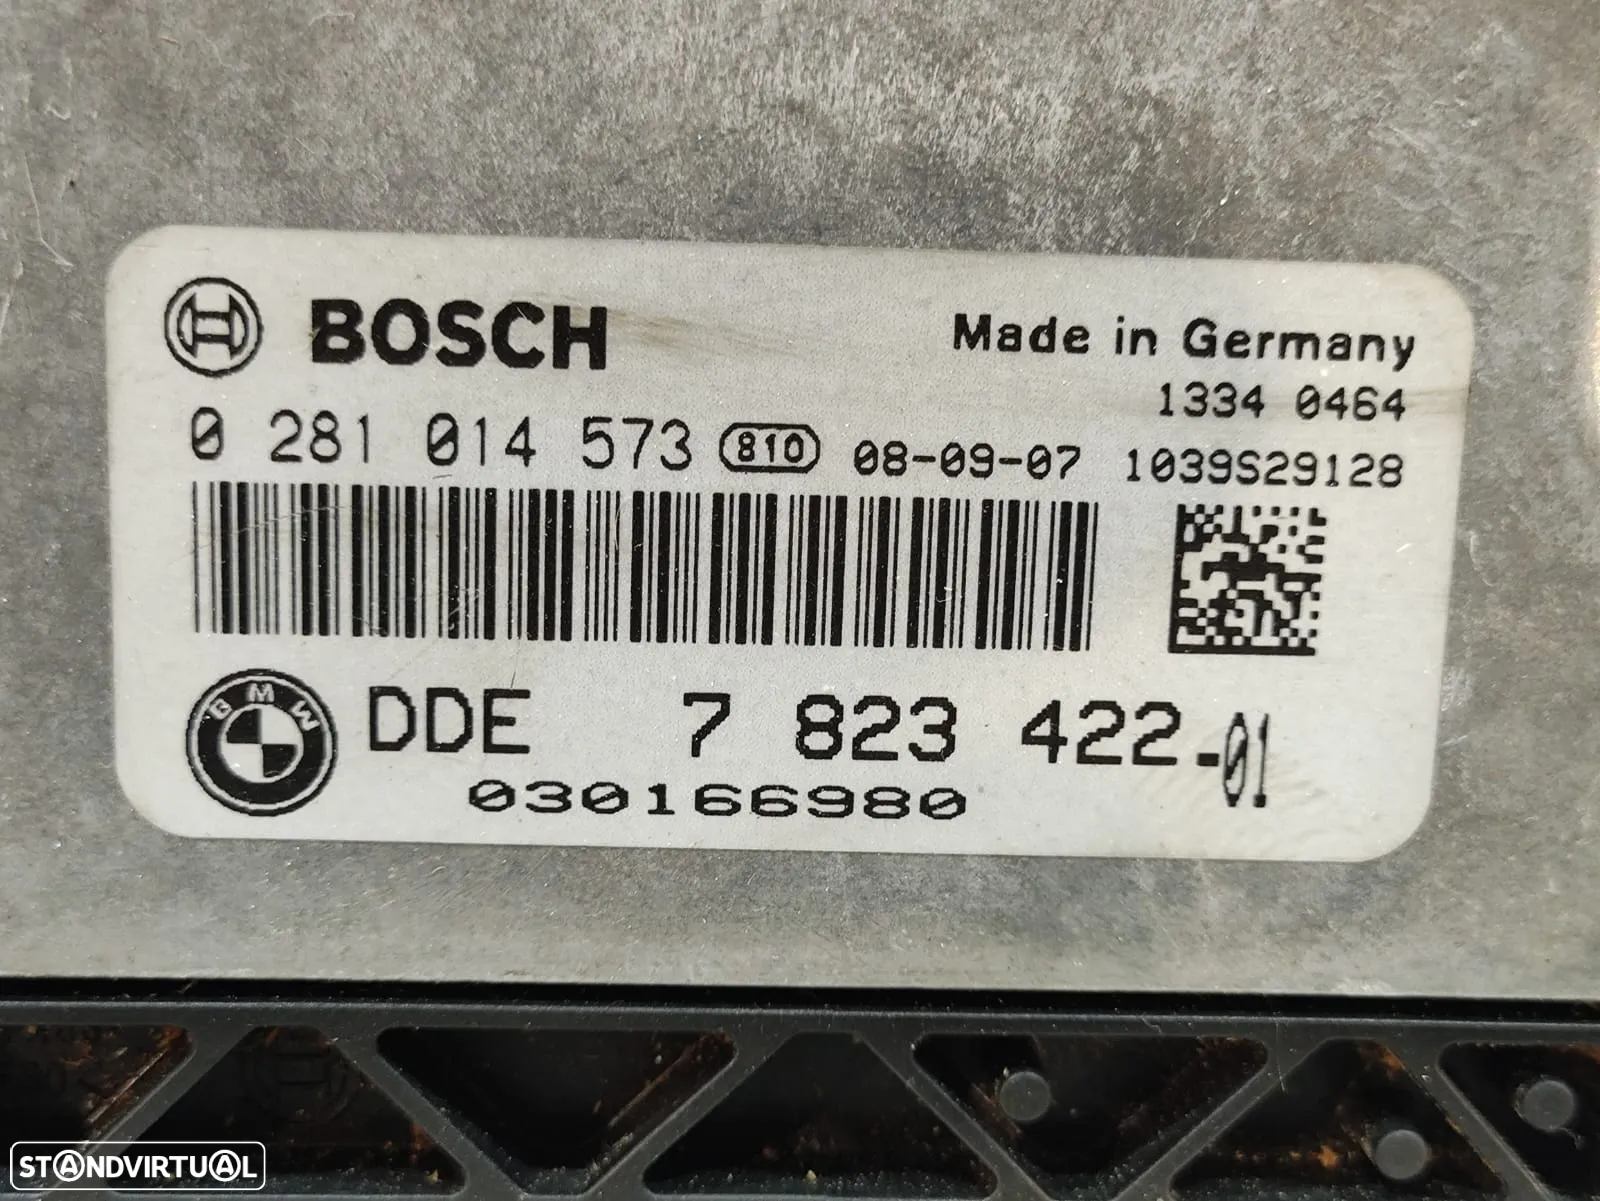 Centralina ECU motor Bosch 0281014573 BMW 7823422 Serie 1 E8X original - 6